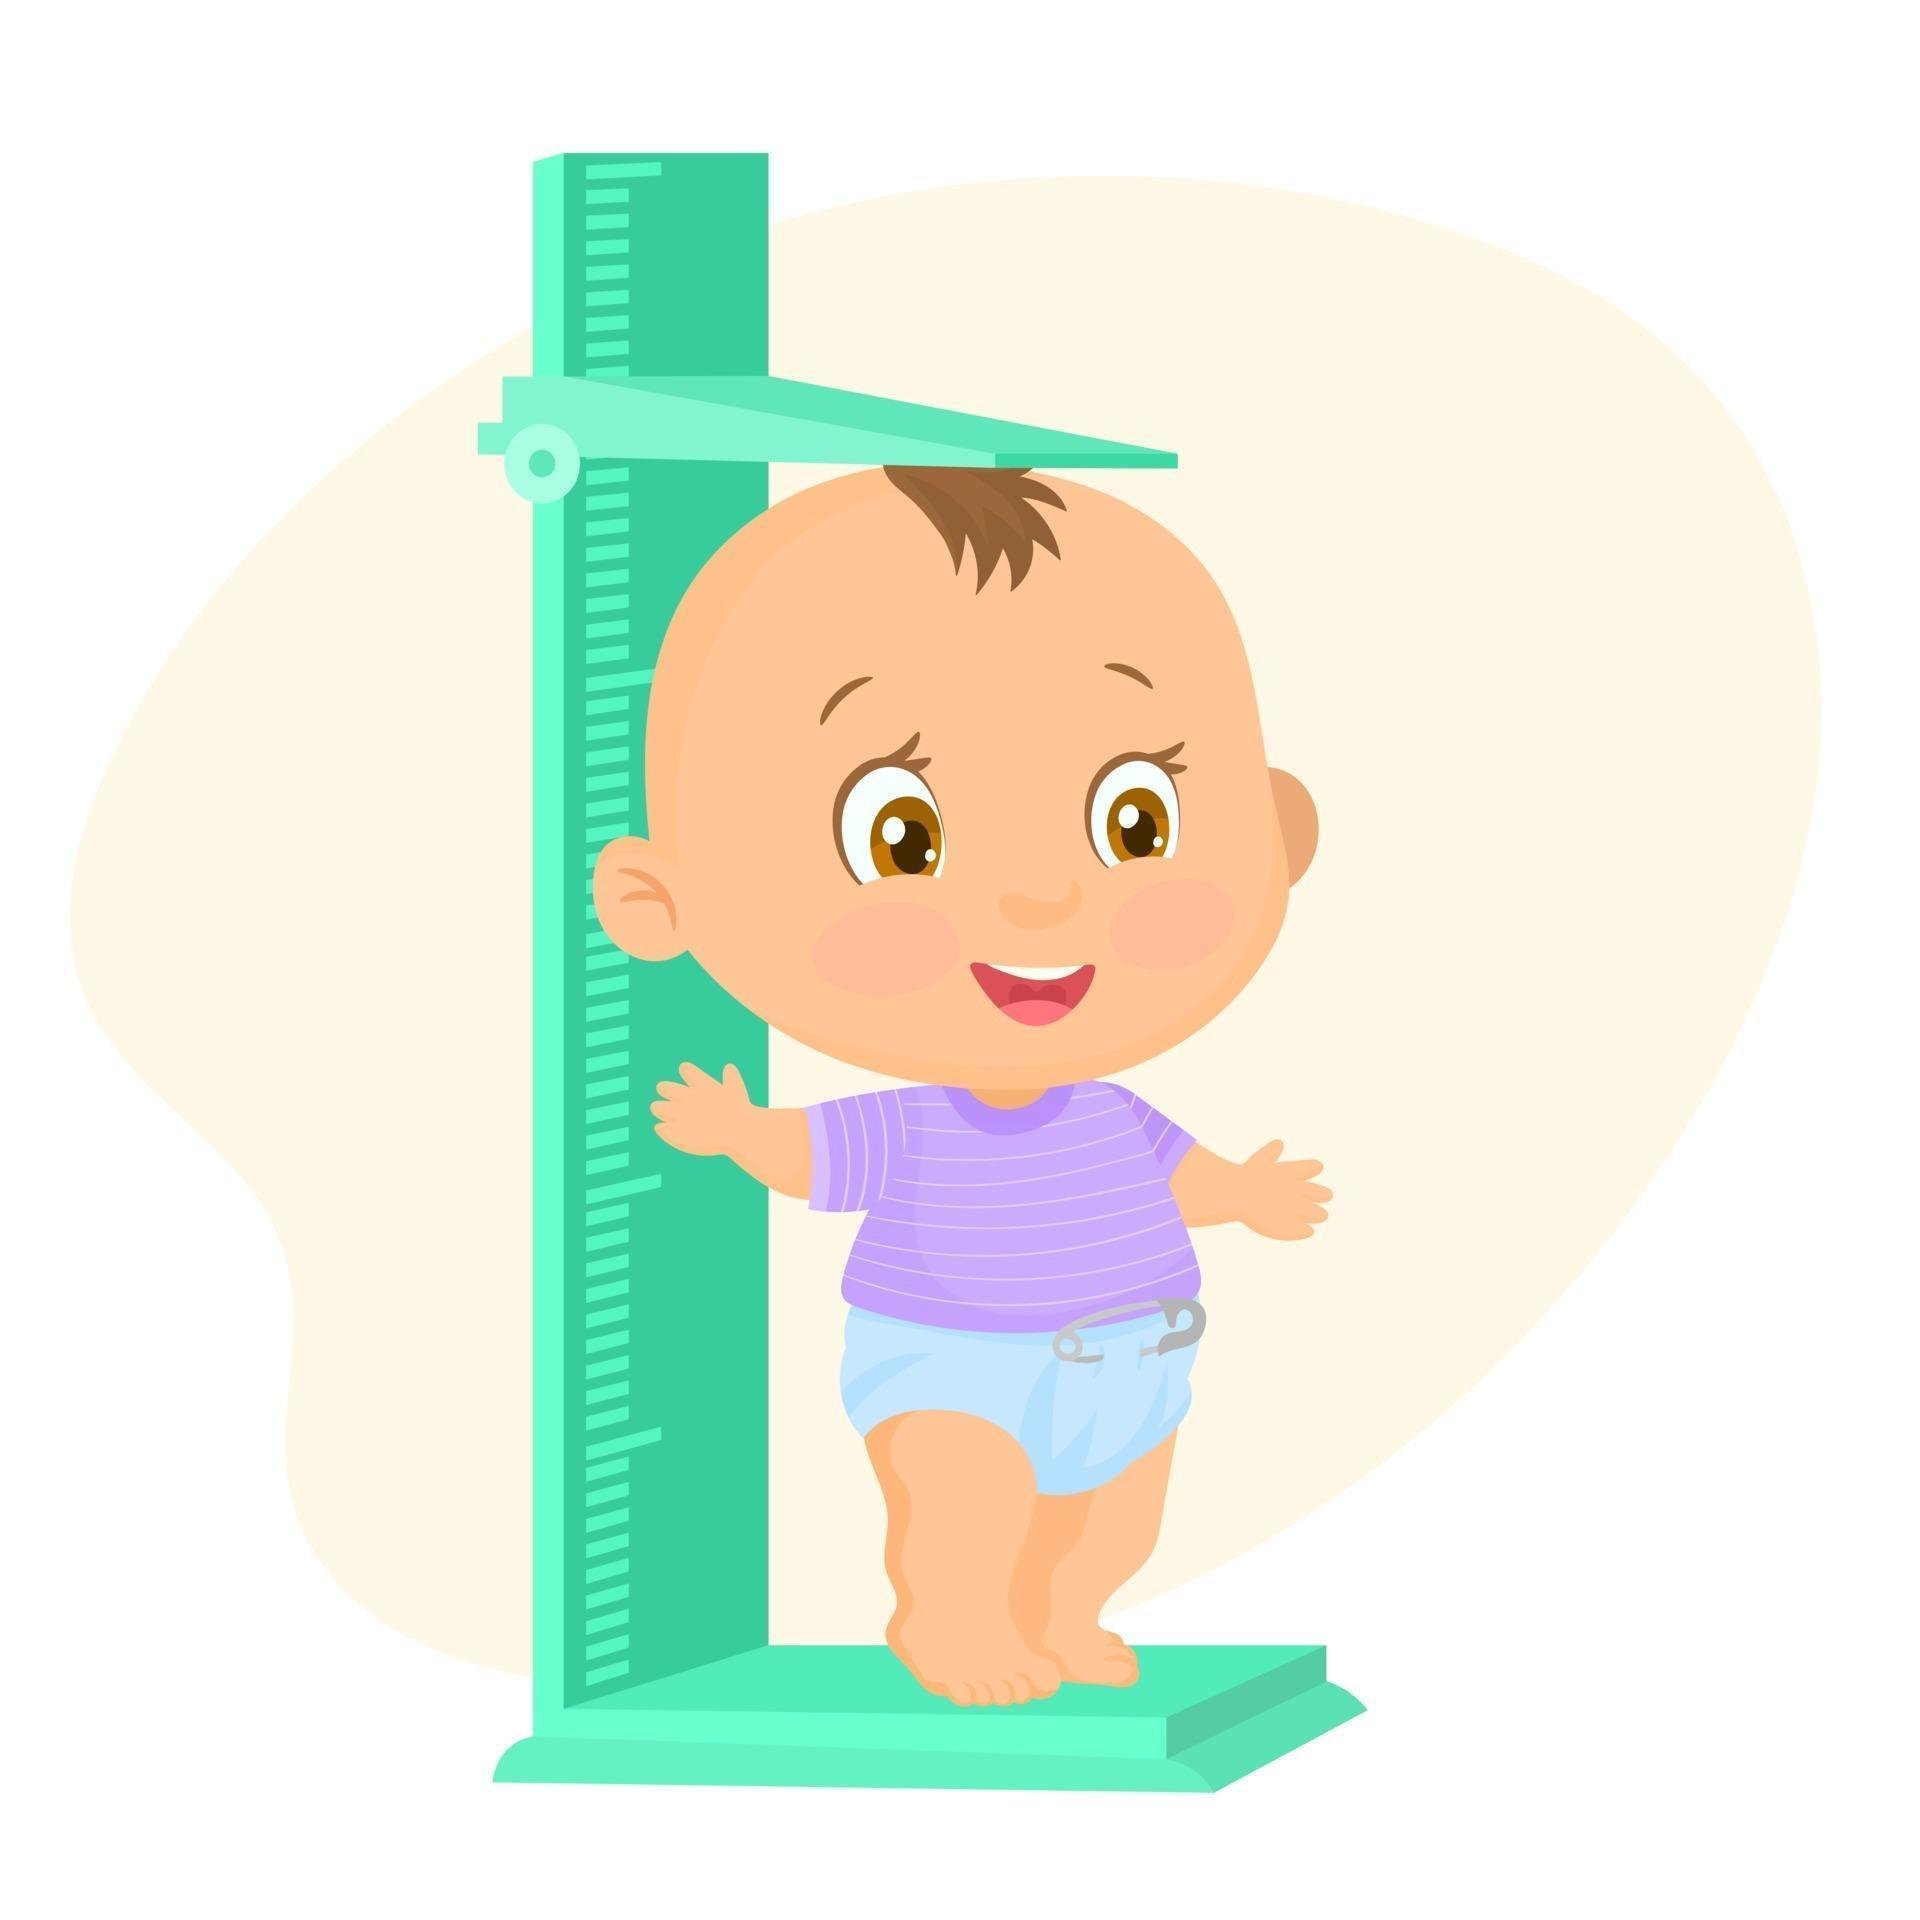 Роста до 3 раз. Измерение роста ребенка. Измеритель роста для детей. Антропометрия детей. Антропометрия детей в саду.